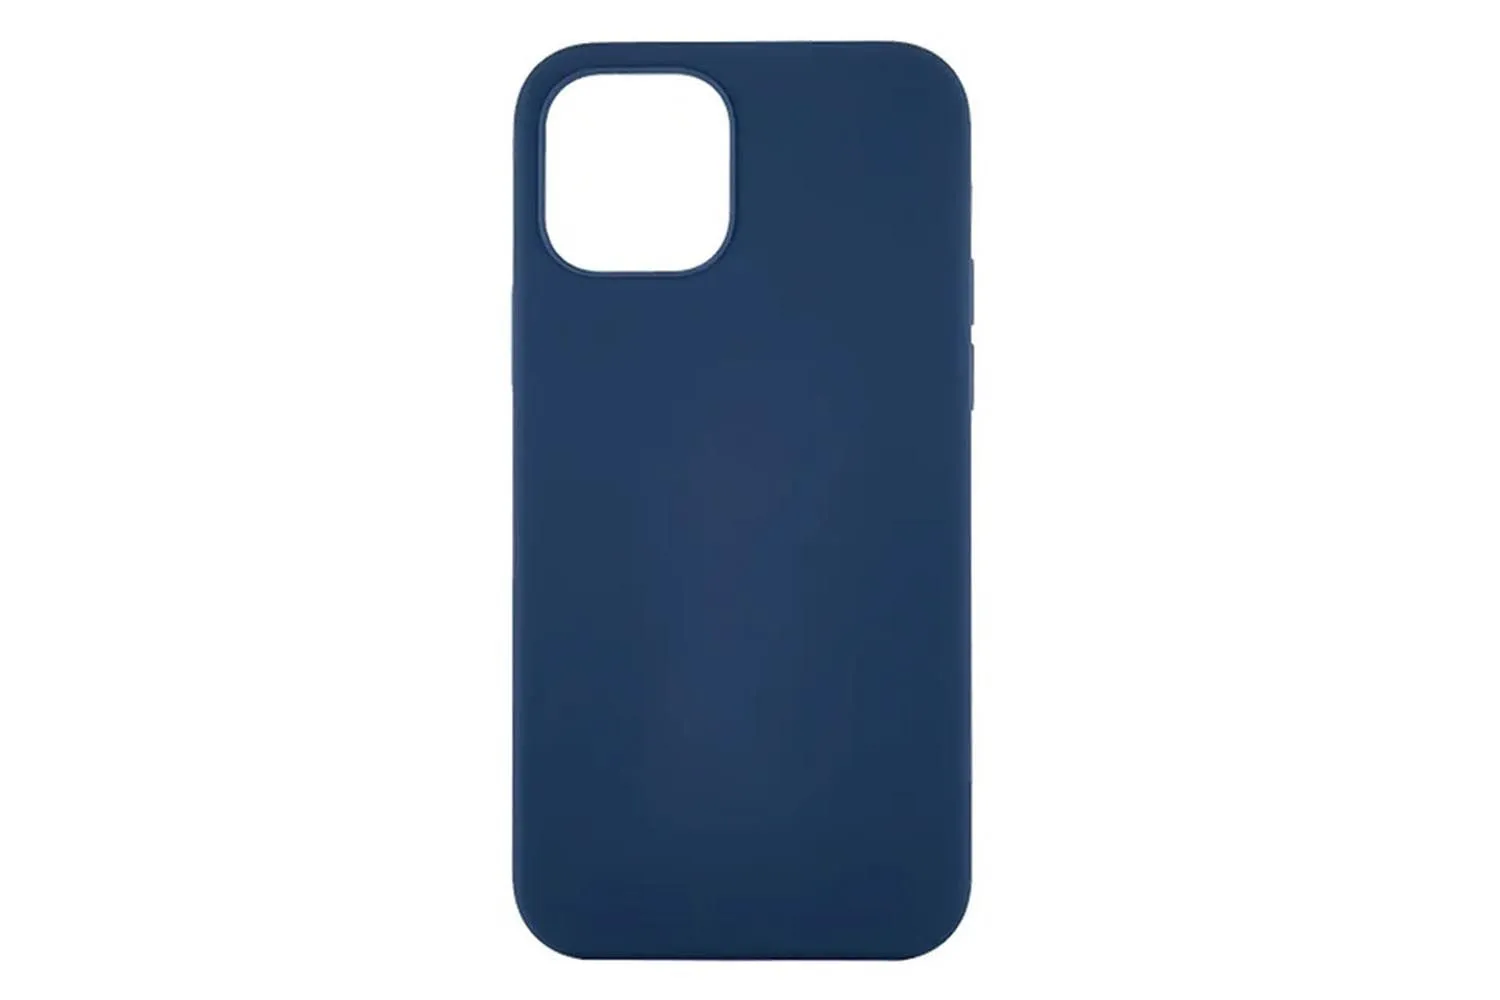 Чехол силиконовый для Apple iPhone 12, 12 Pro (темно-синий)